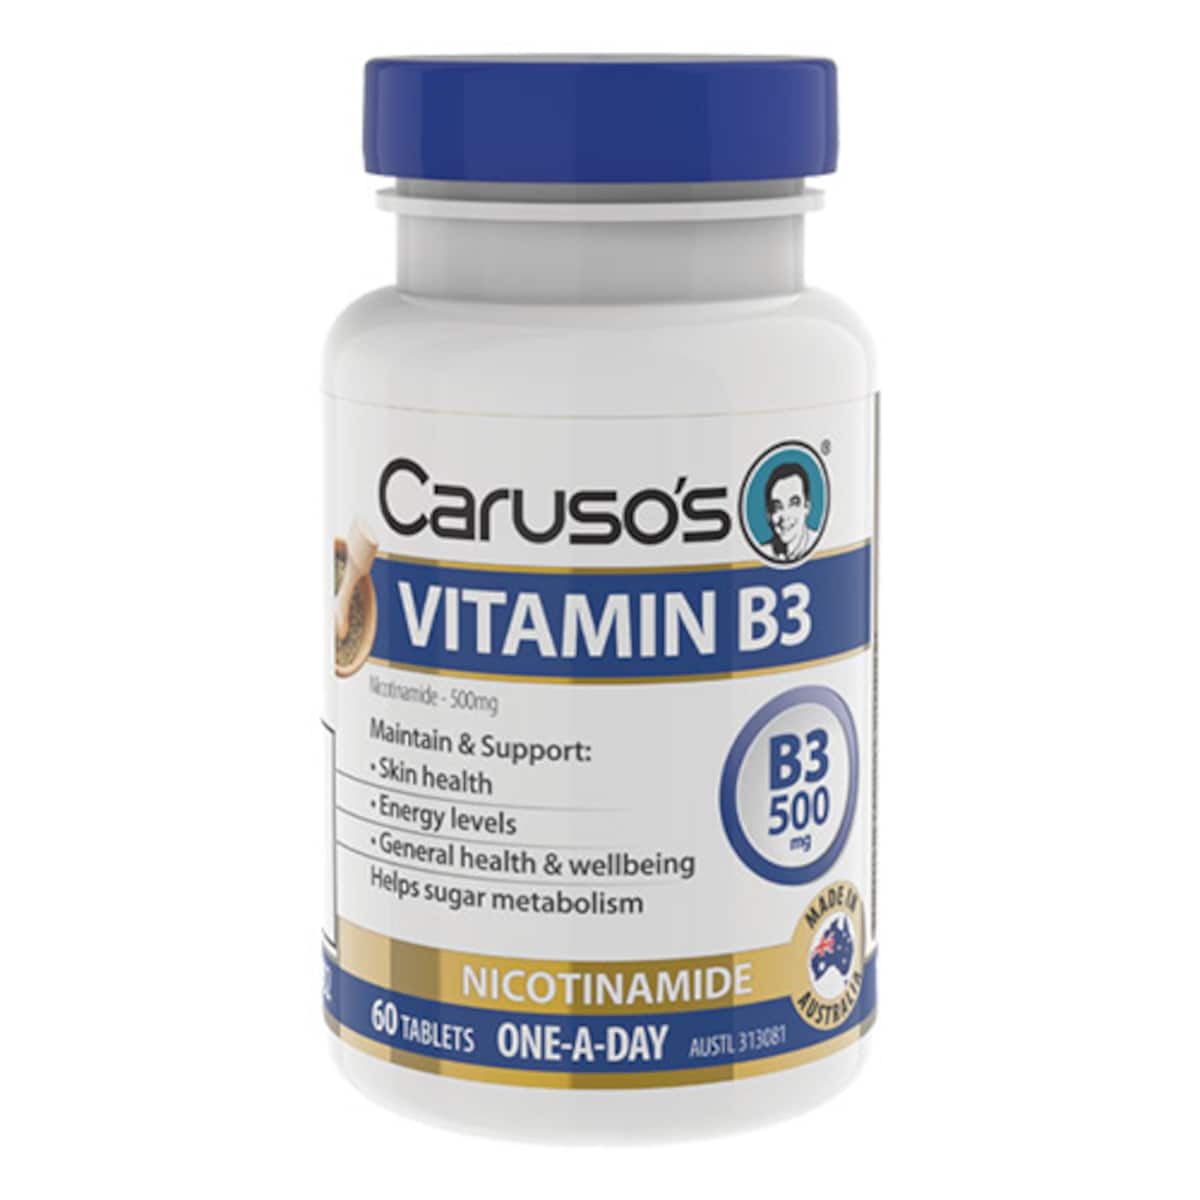 Carusos Vitamin B3 Nicotinamide 500mg 60 Tablets